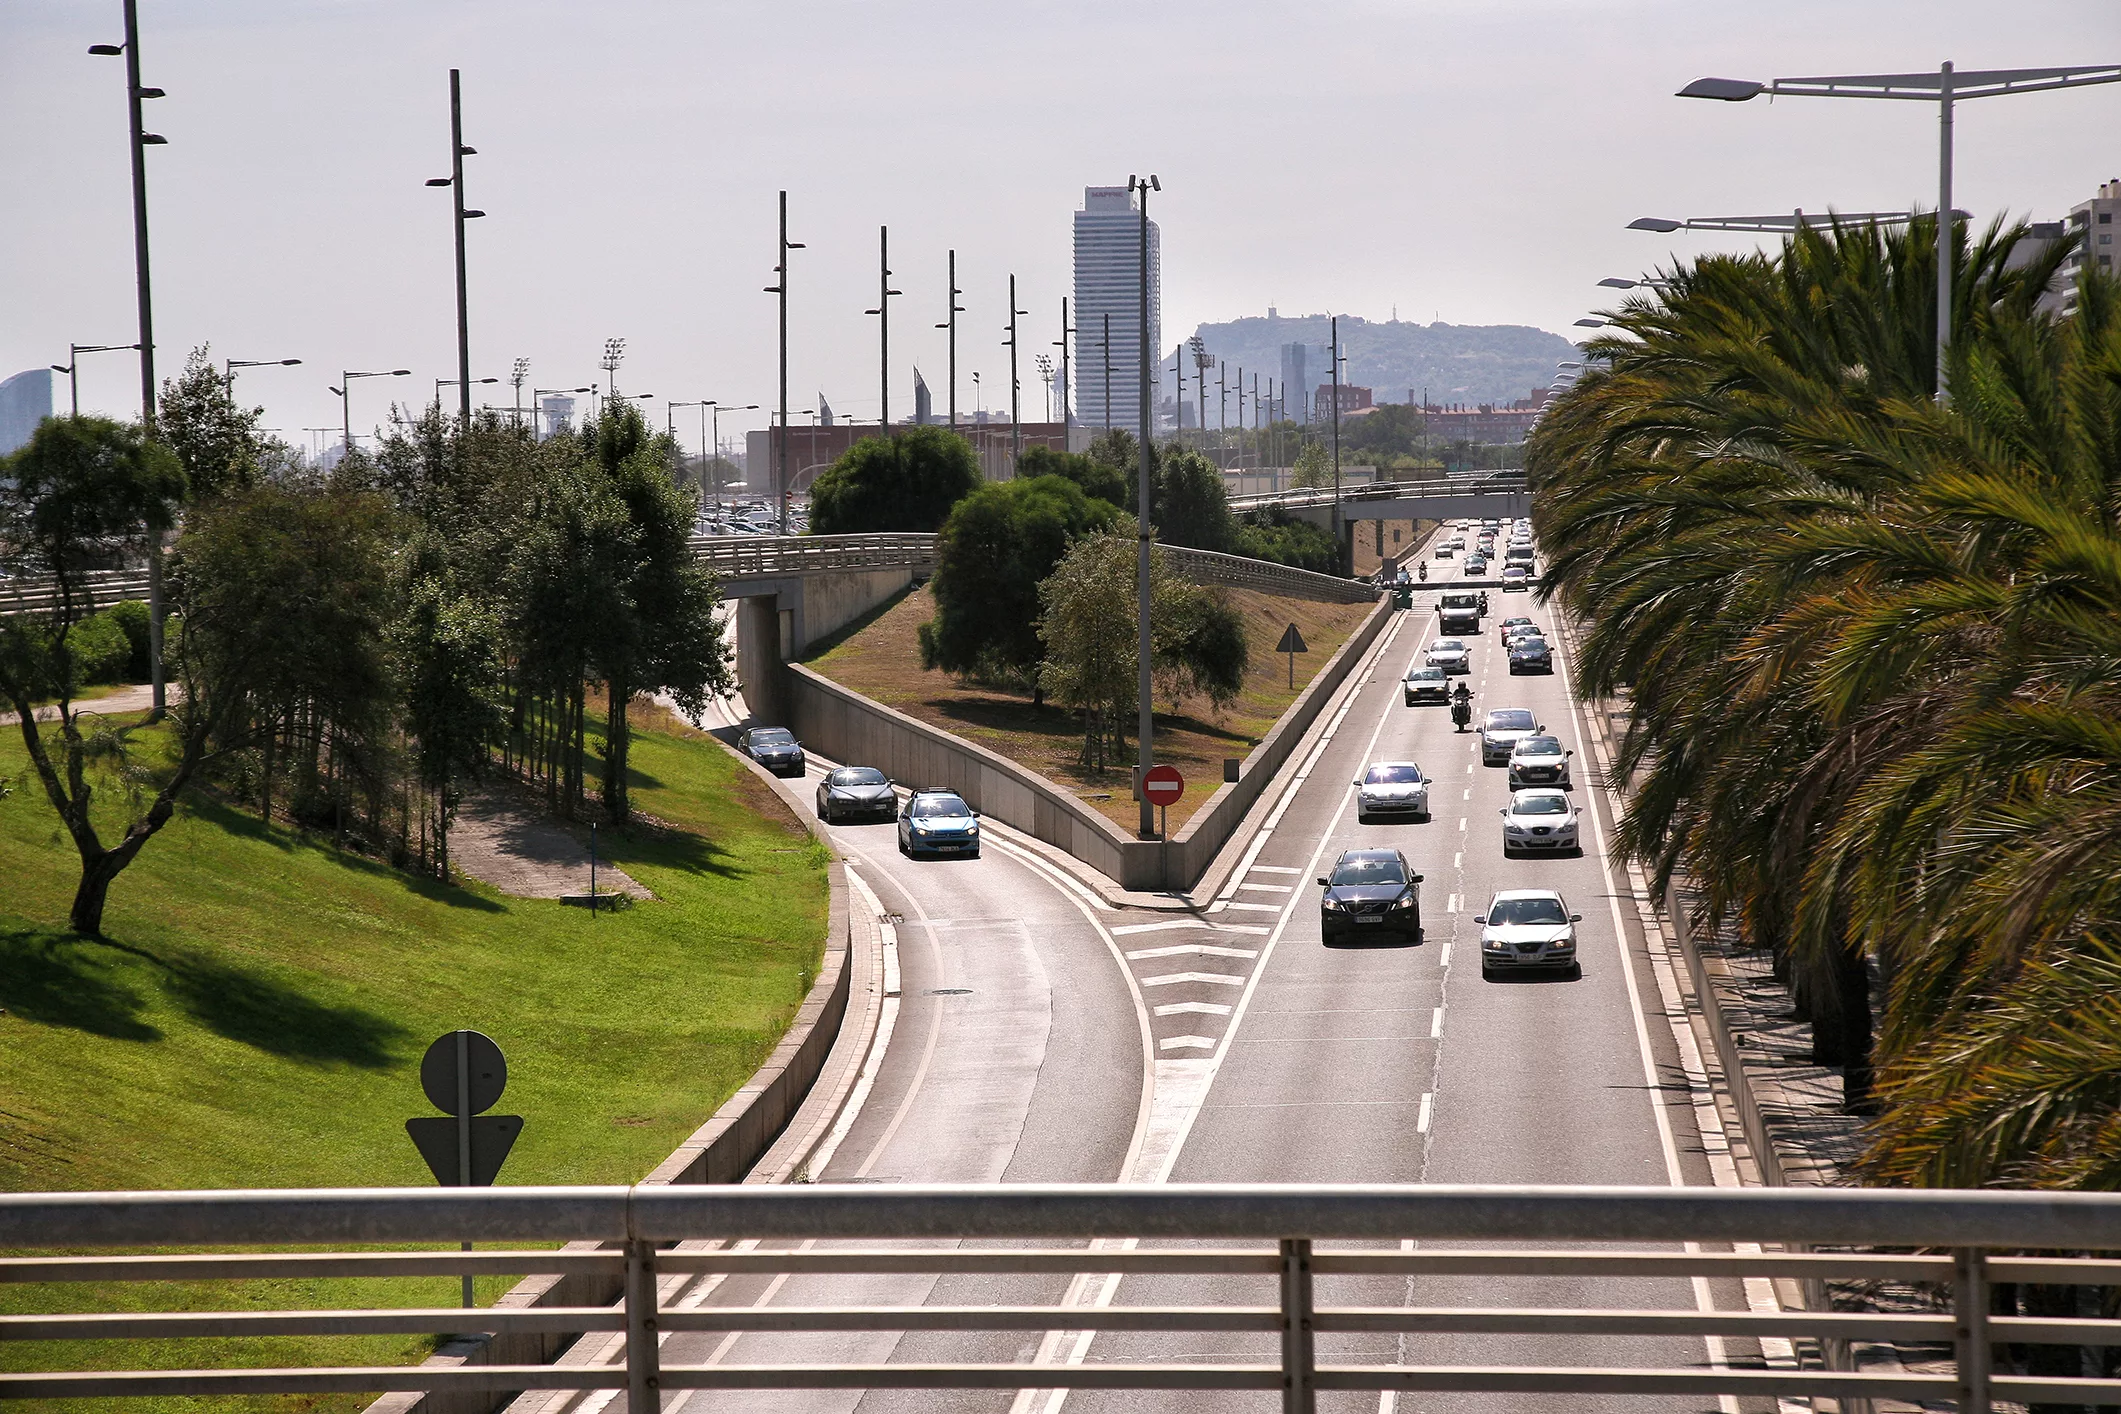 Creix la congestió als accessos a Barcelona i àrea metropolitana per culpa de la manca d’inversions en infraestructures